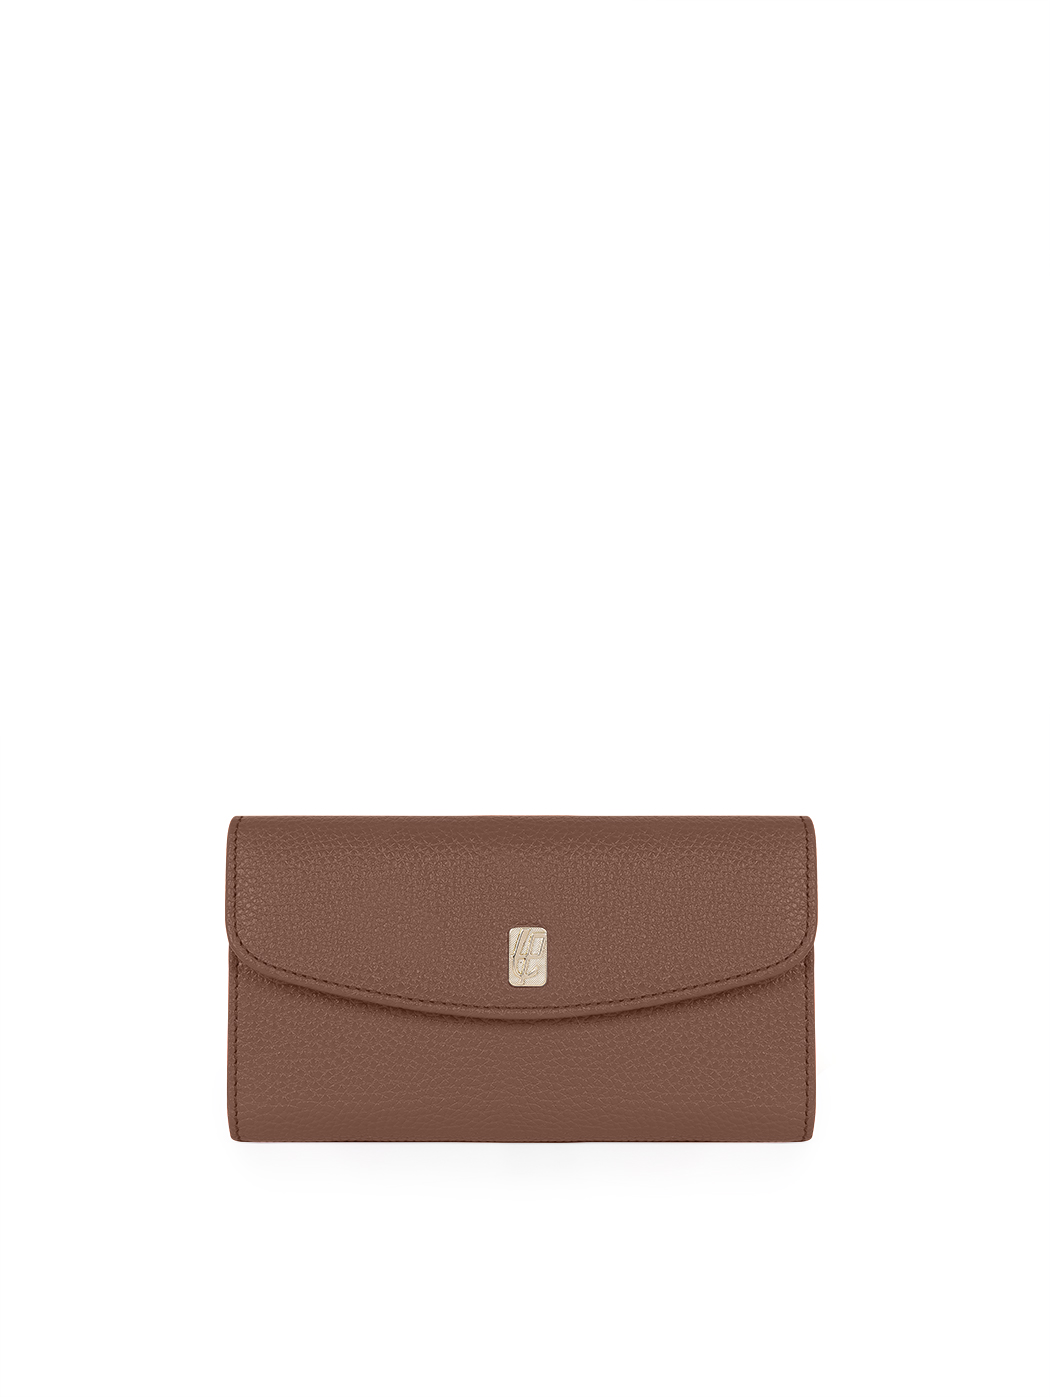 Long wallet in dark brown leather